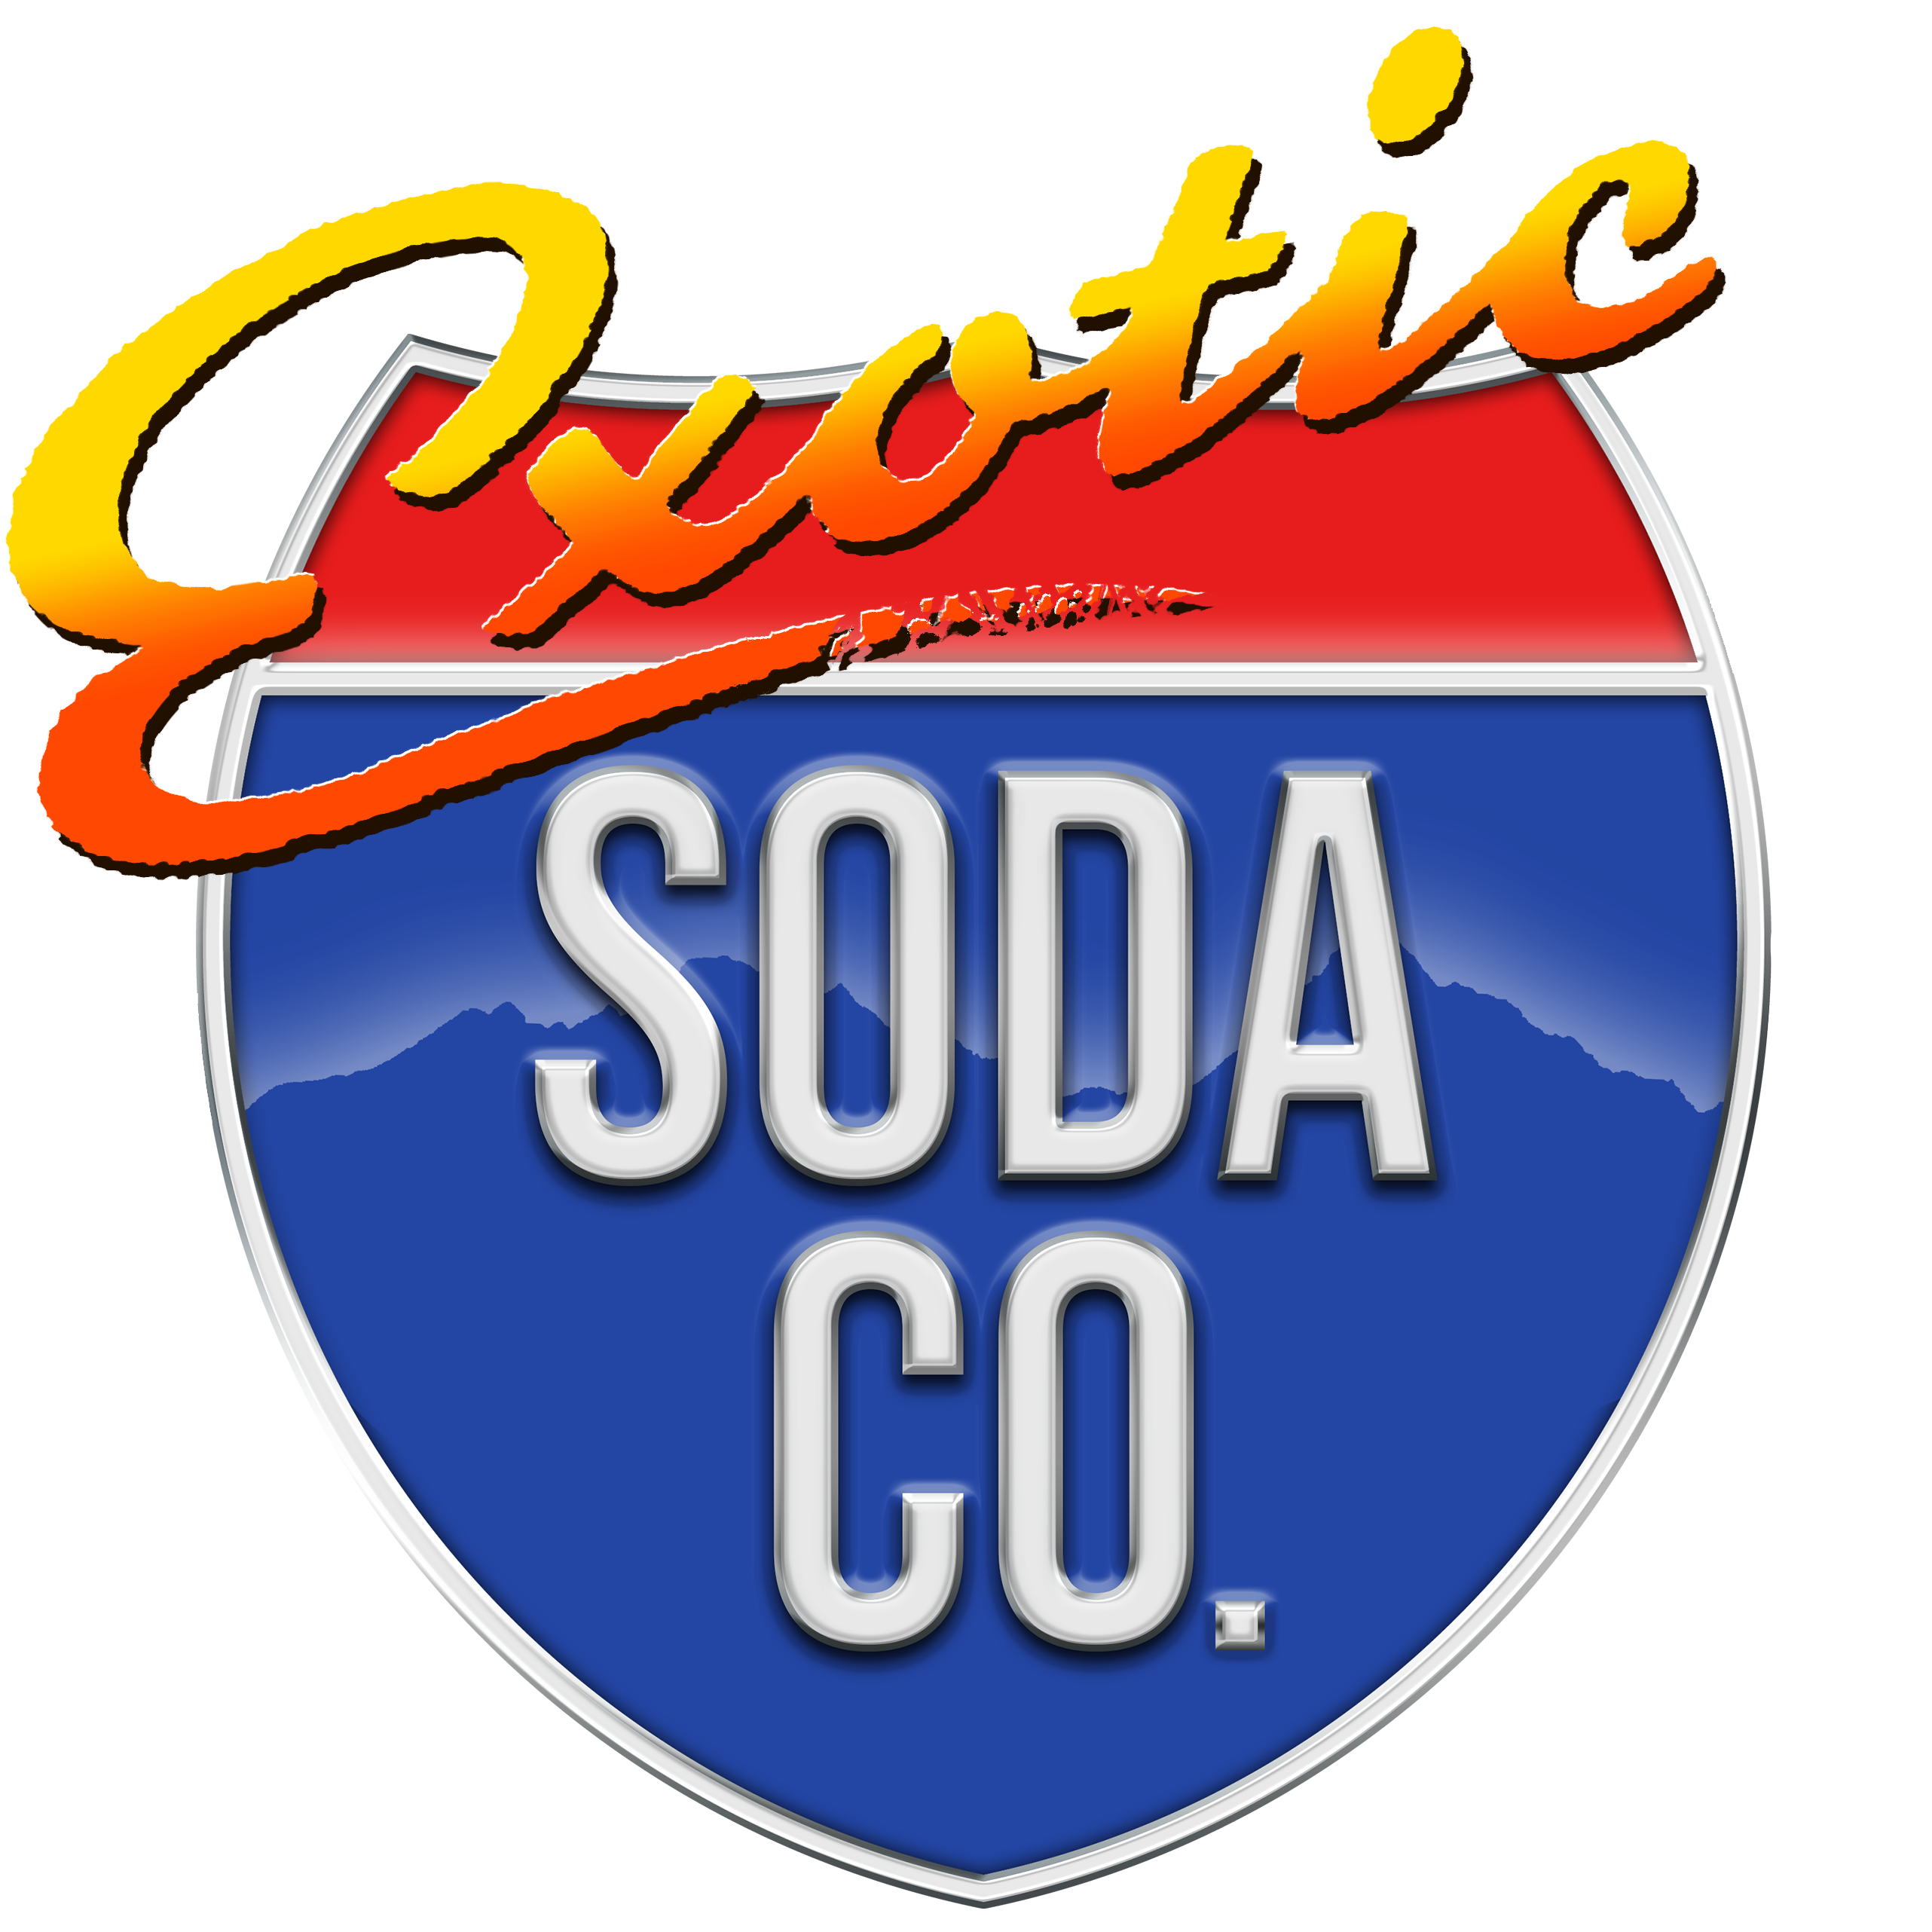 Exotic Soda Company